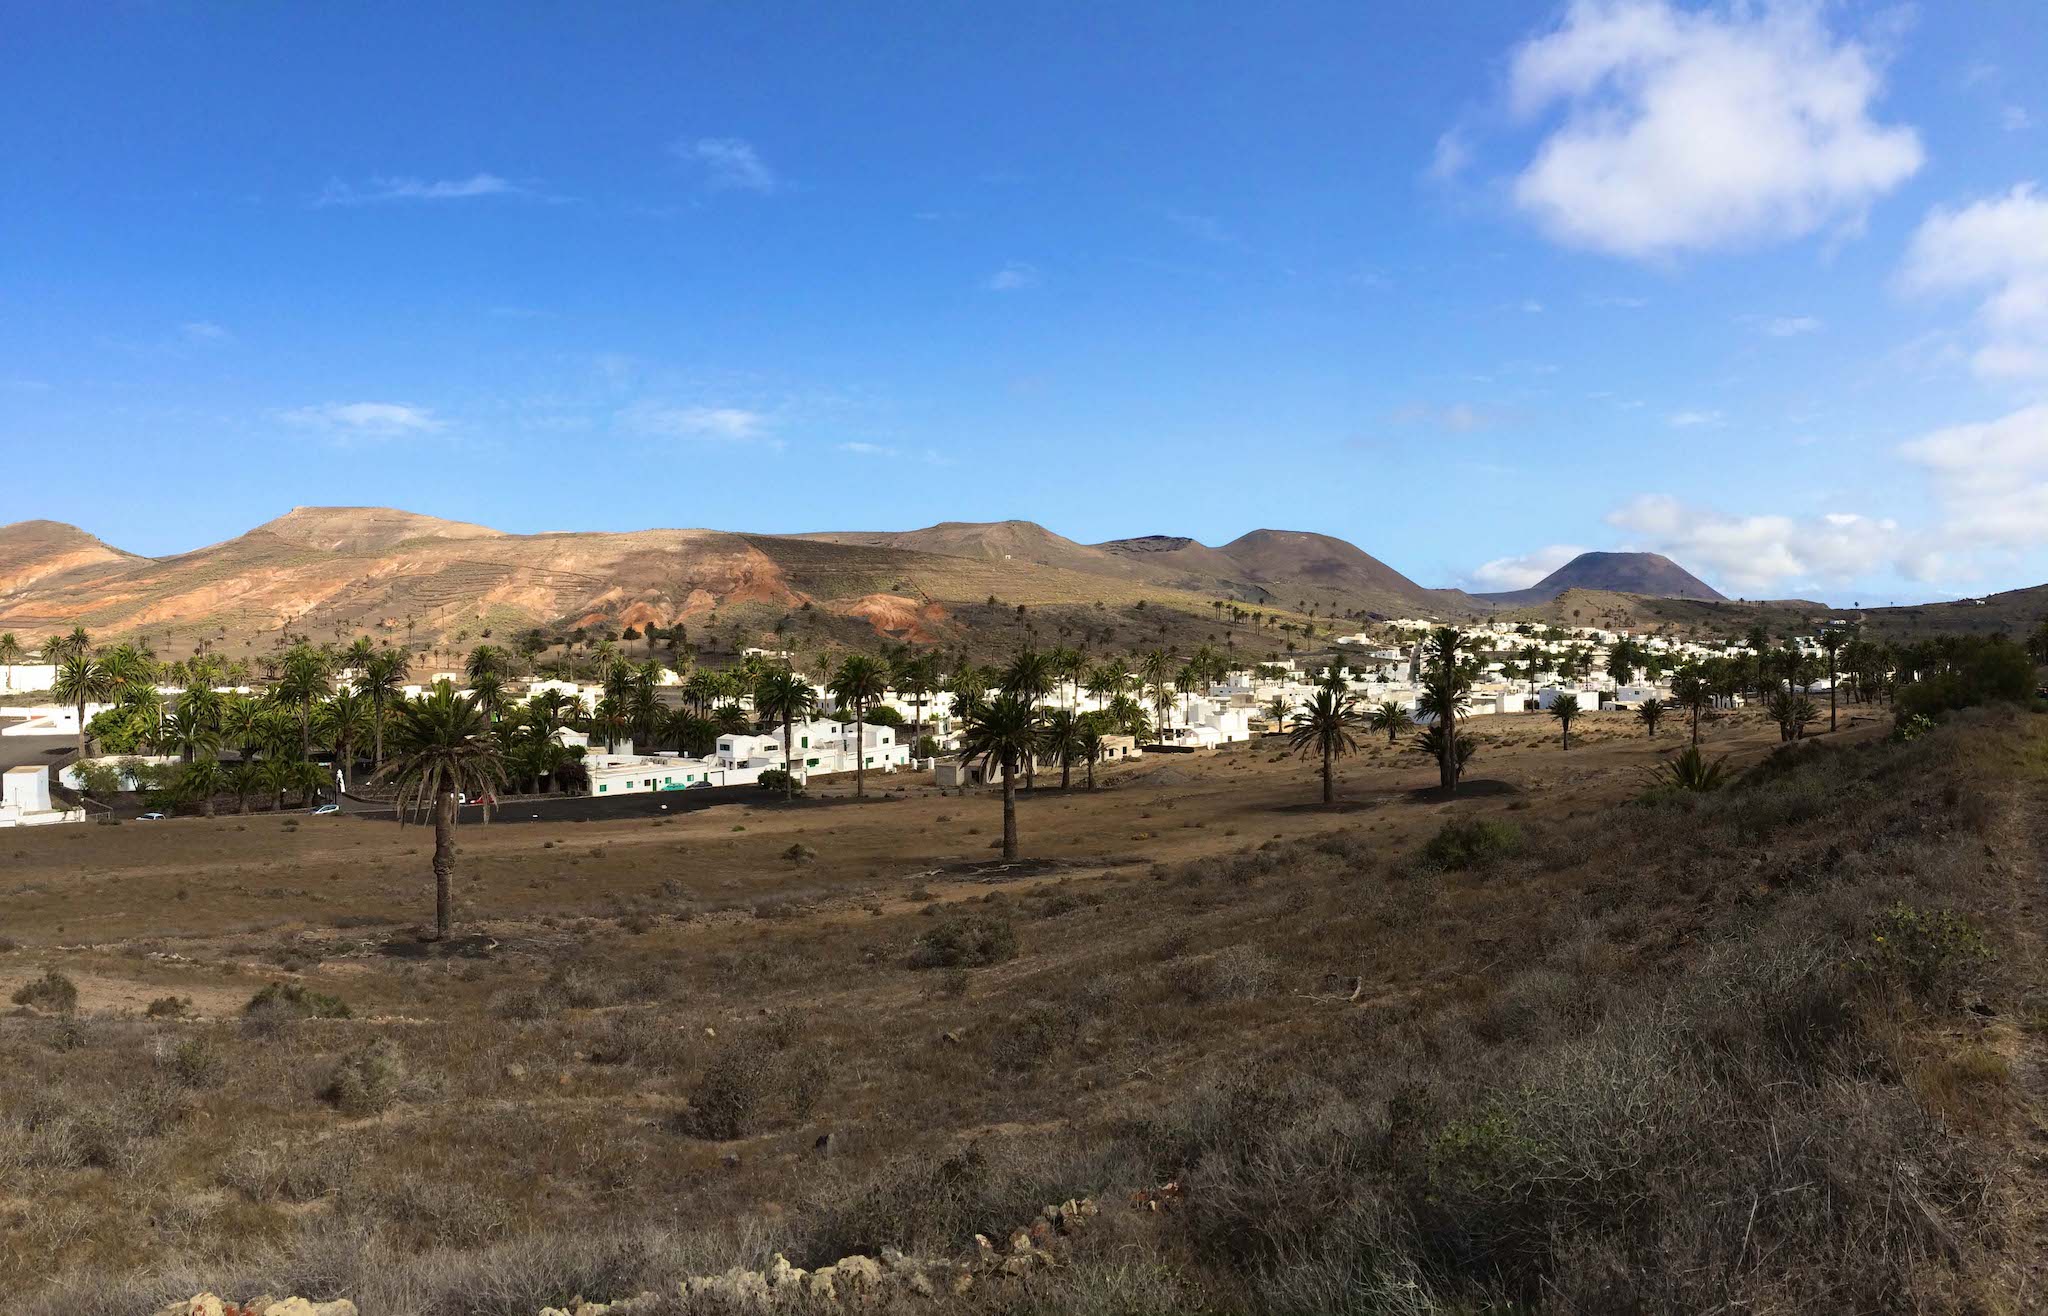 Valle delle 1000 palme: nella piccola città di Haria, a Lanzarote, cresce un numero incredibile di palme in contrasto con il paesaggio altrimenti piuttosto arido. Foto: Sascha Tegtmeyer